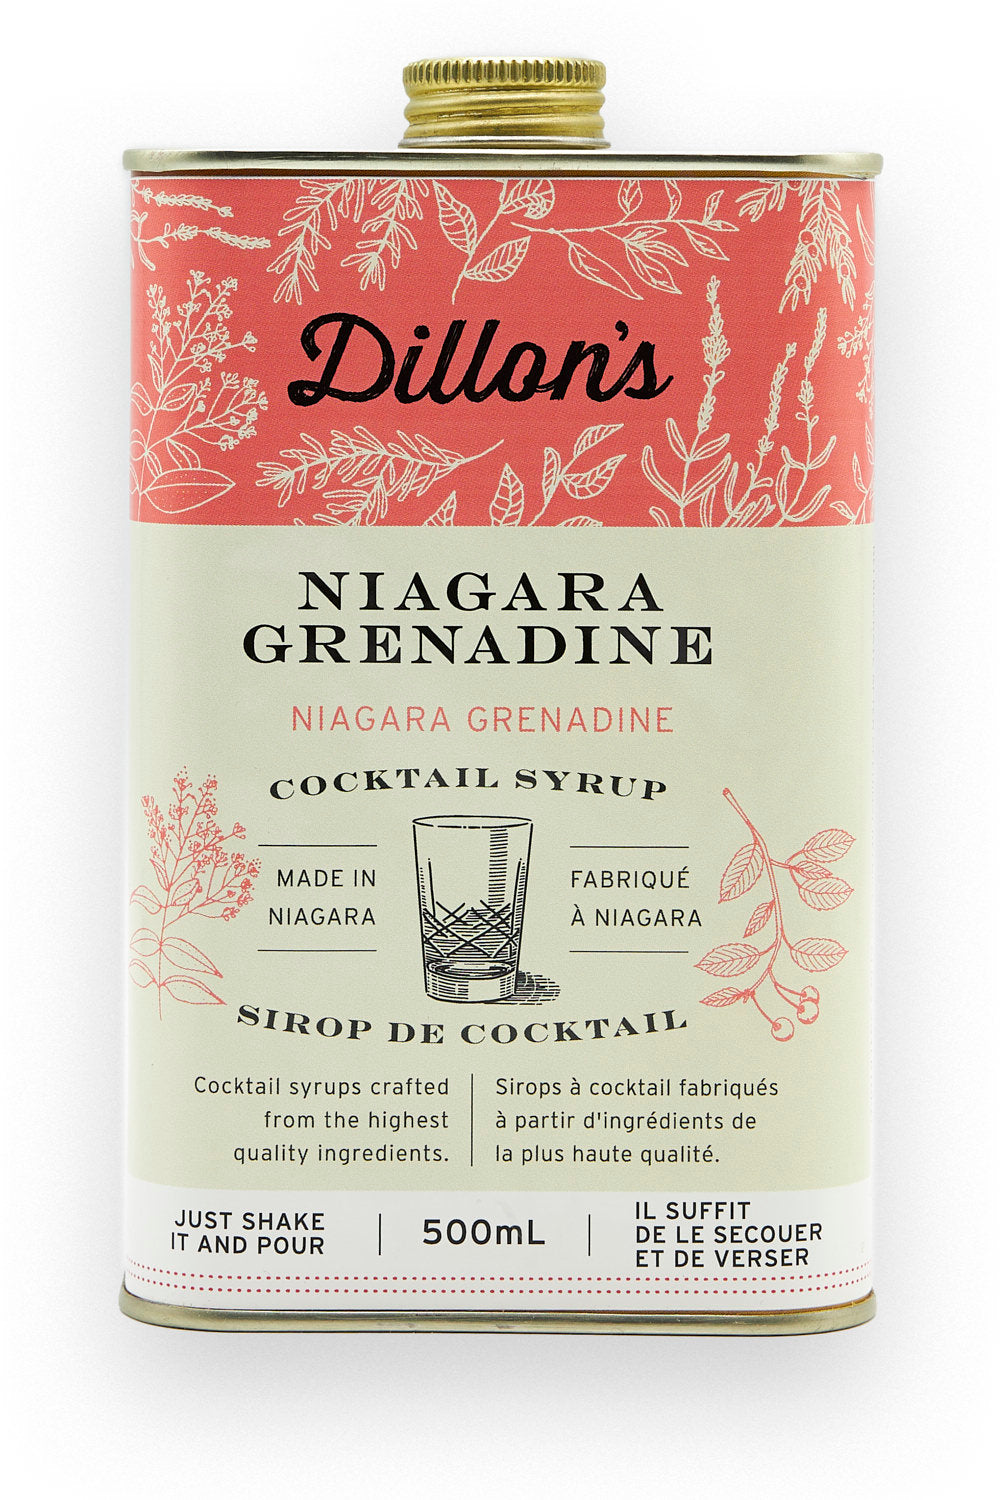 Dillon's Niagara Grenadine